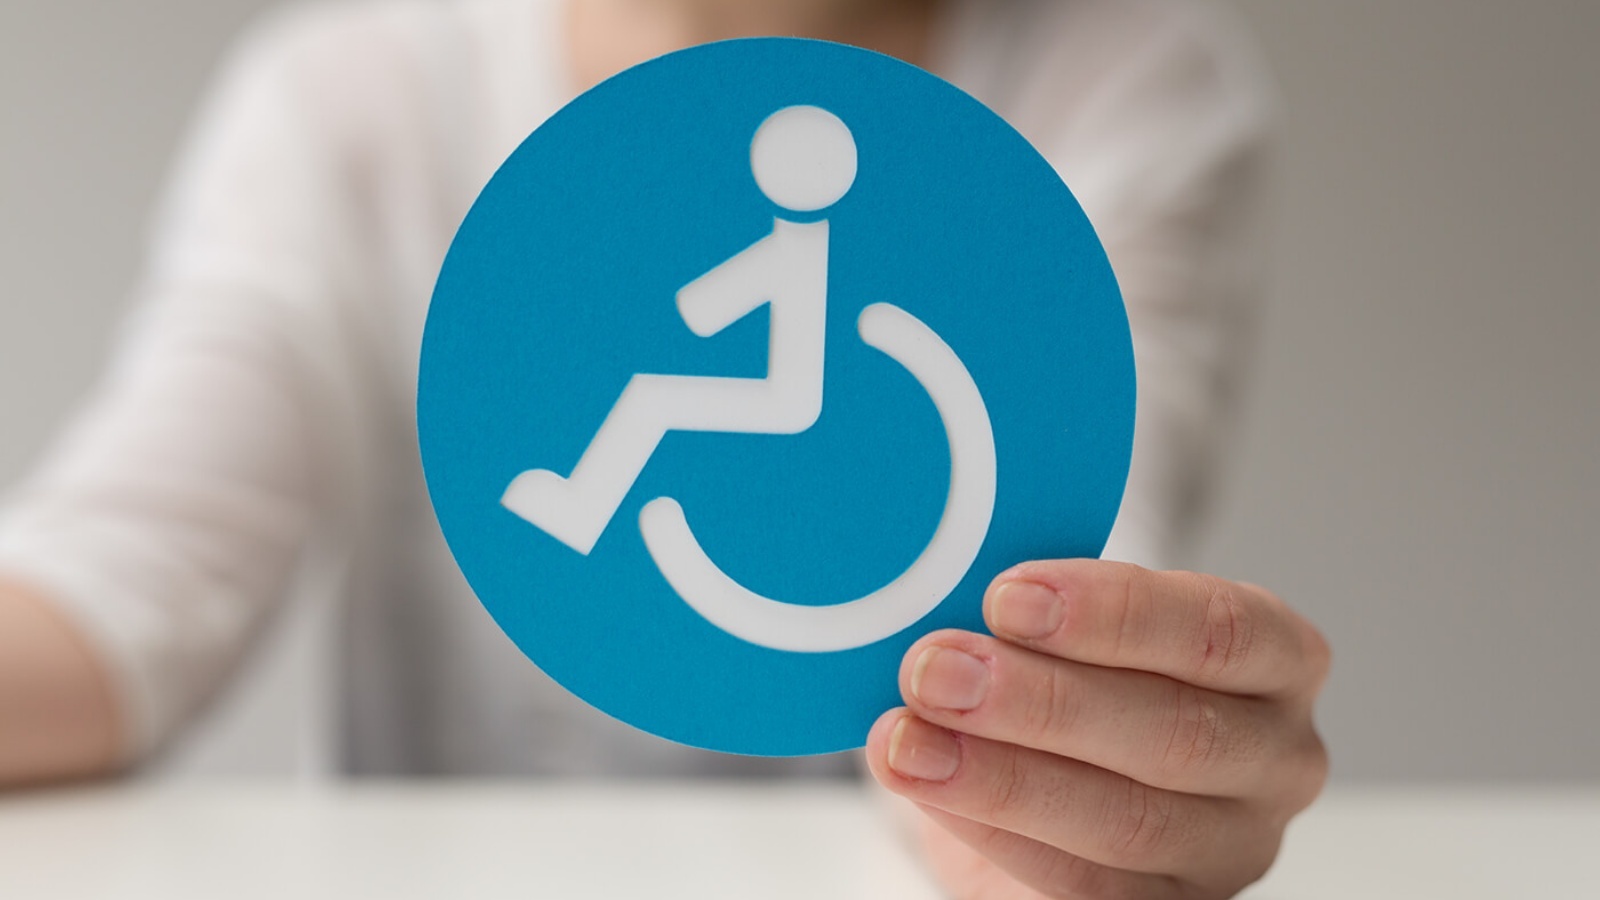 Дисабилити сайт для инвалидов